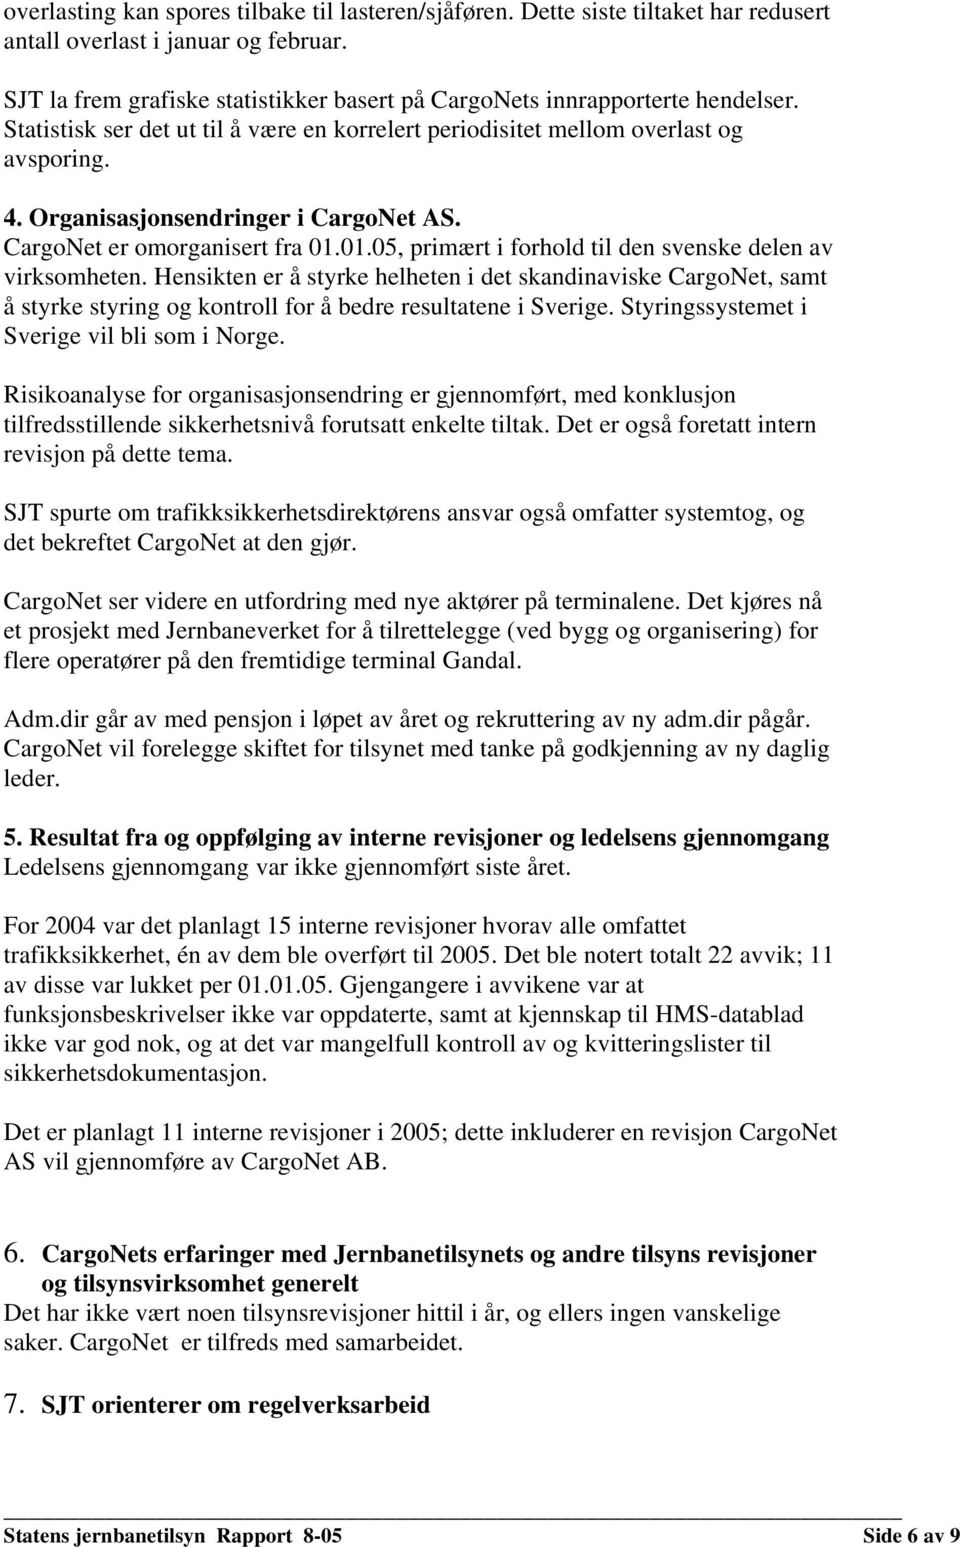 Organisasjonsendringer i CargoNet AS. CargoNet er omorganisert fra 01.01.05, primært i forhold til den svenske delen av virksomheten.